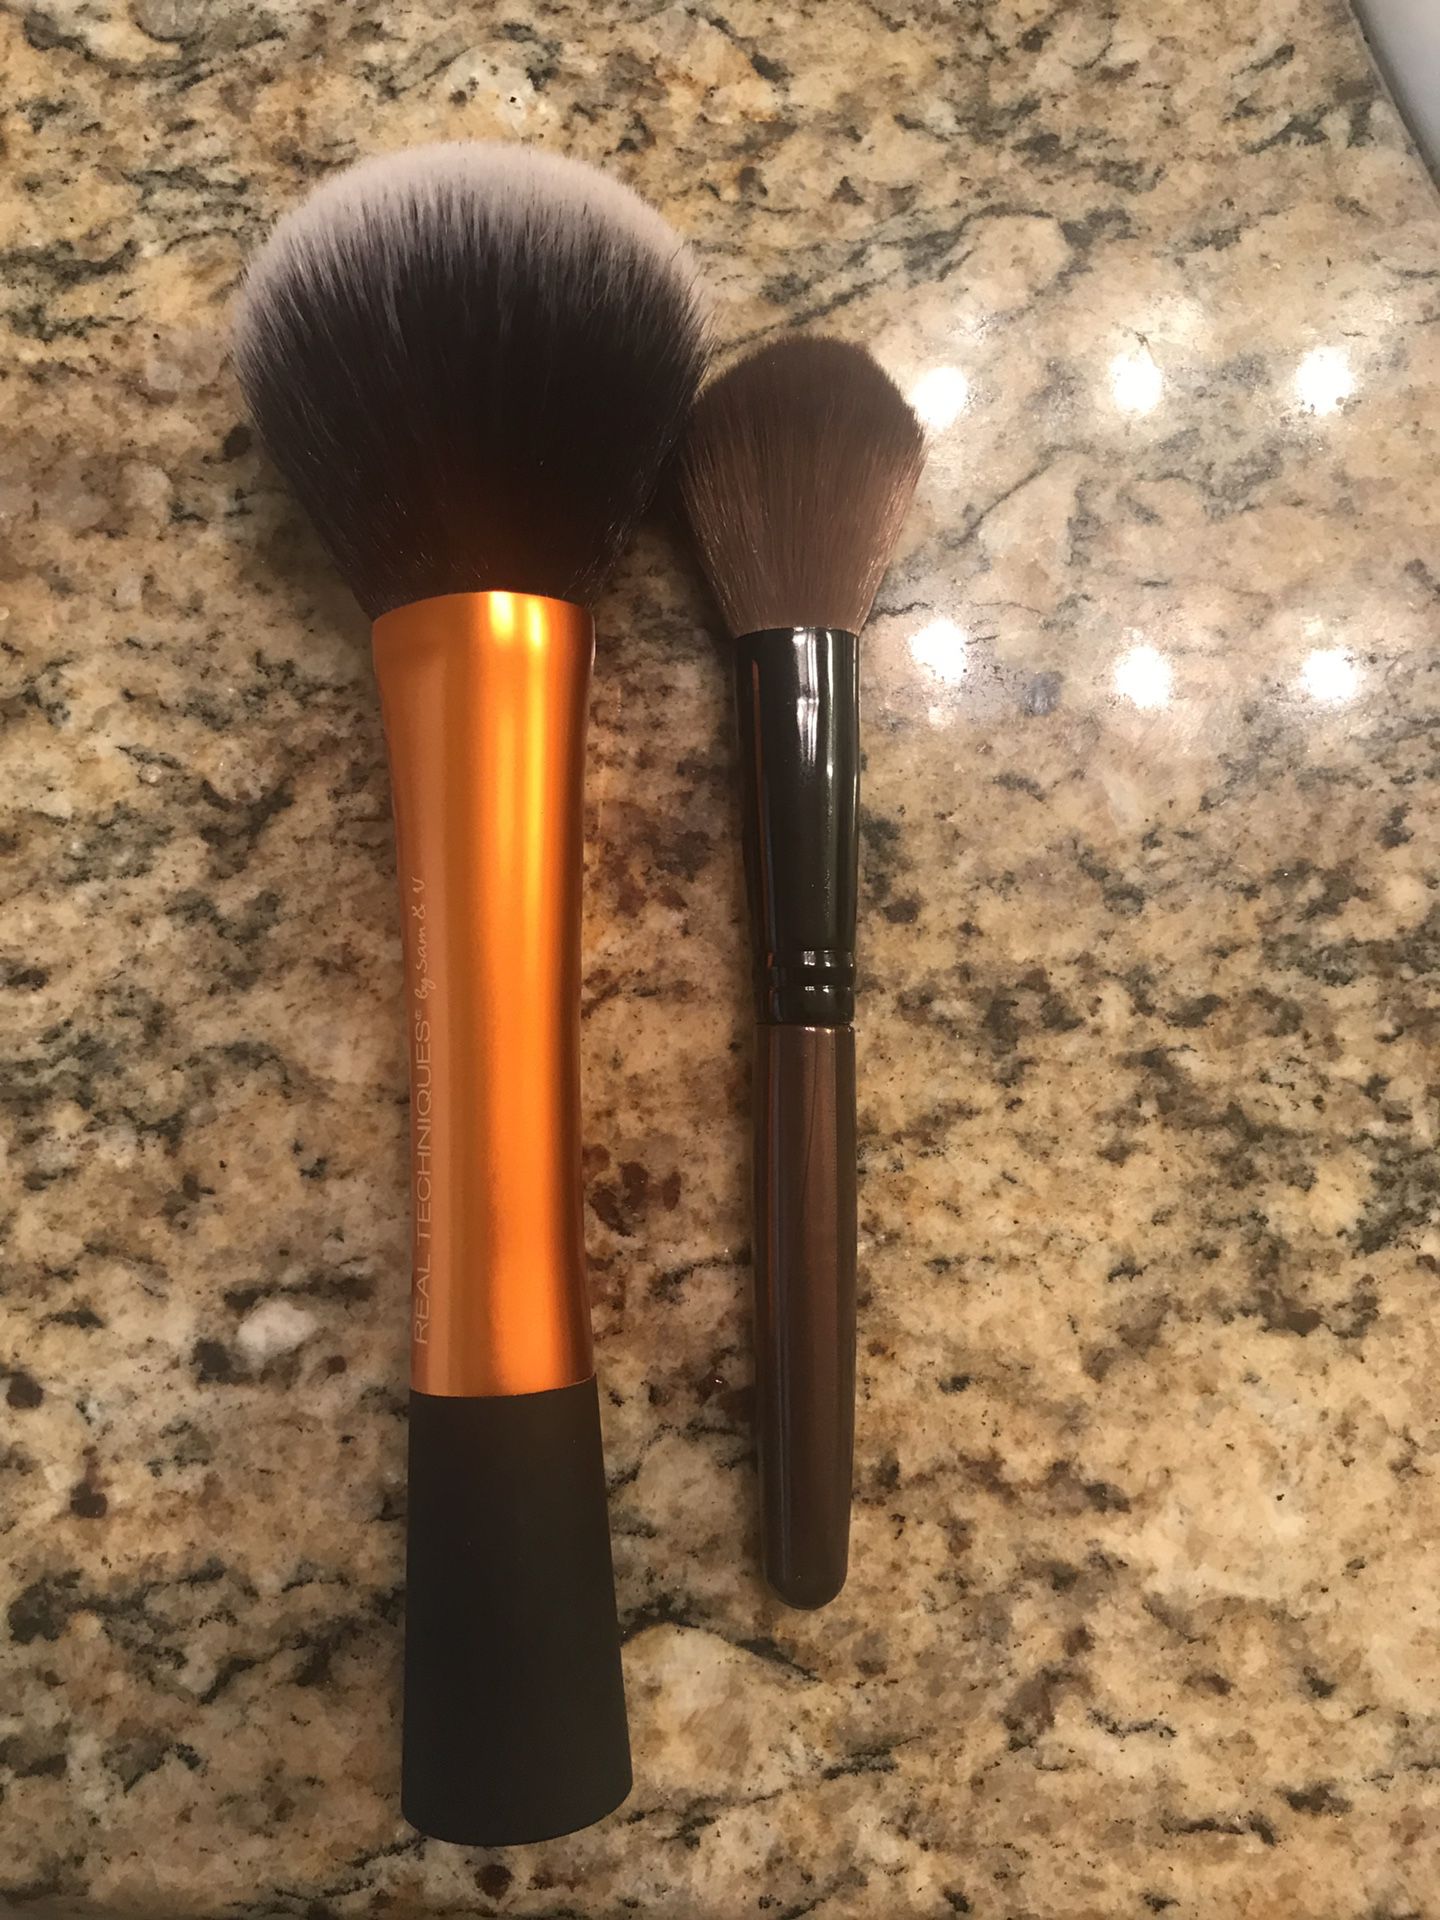 Makeup powder brushes